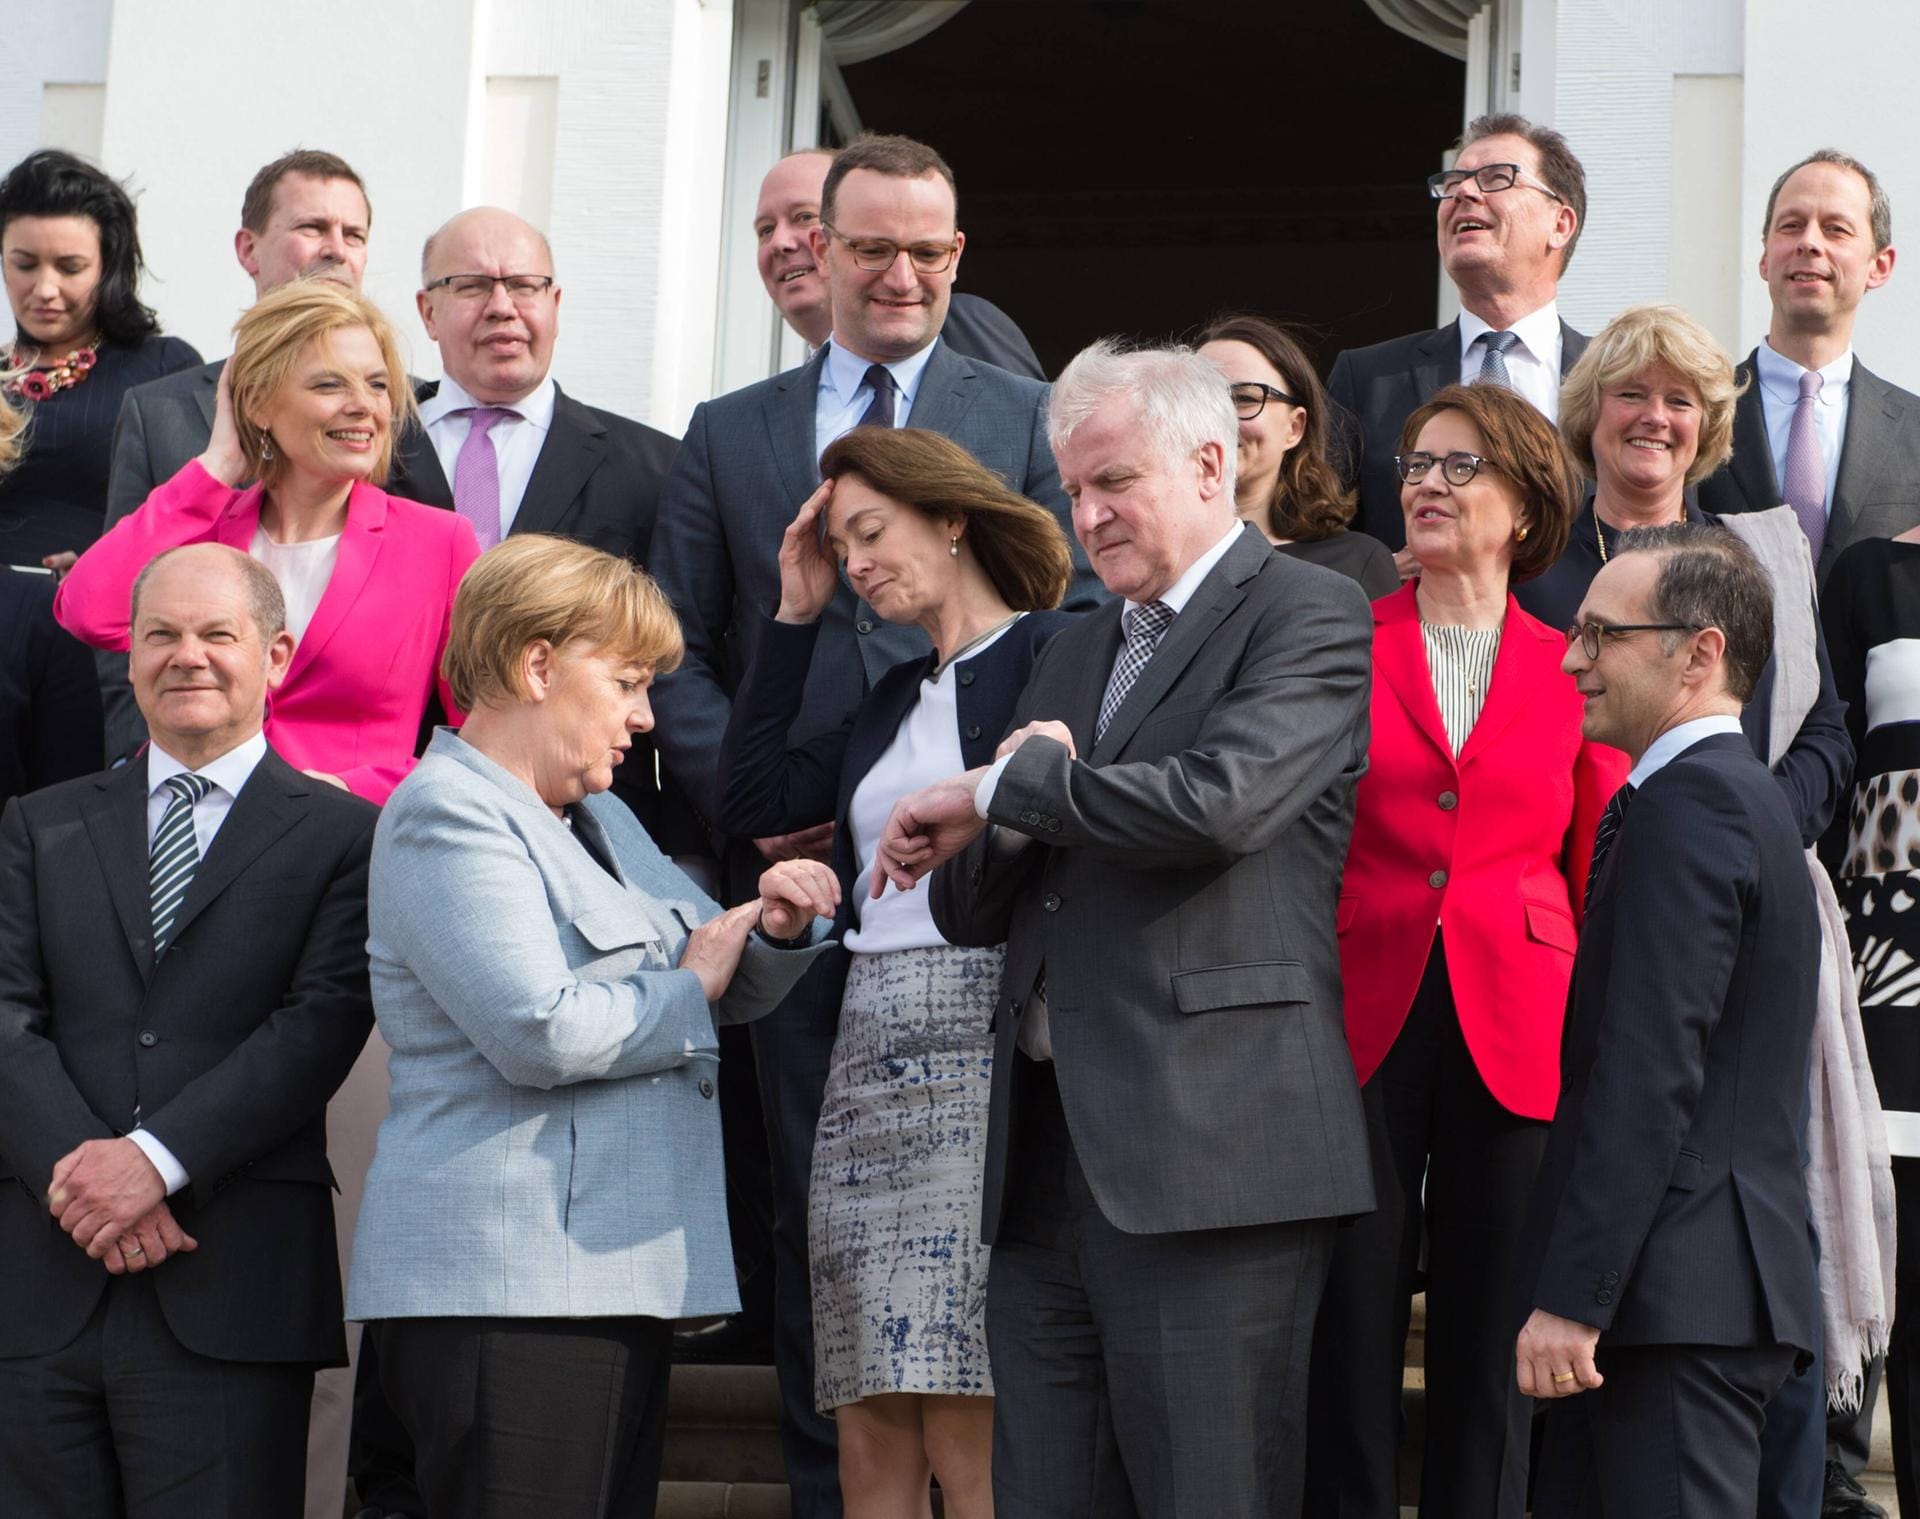 Nach langen Koalitionsverhandlungen wurde Seehofer in der dritten großen Koalition unter Merkel 2018 zum Bundesminister des Innern, für Bau und Heimat ernannt.